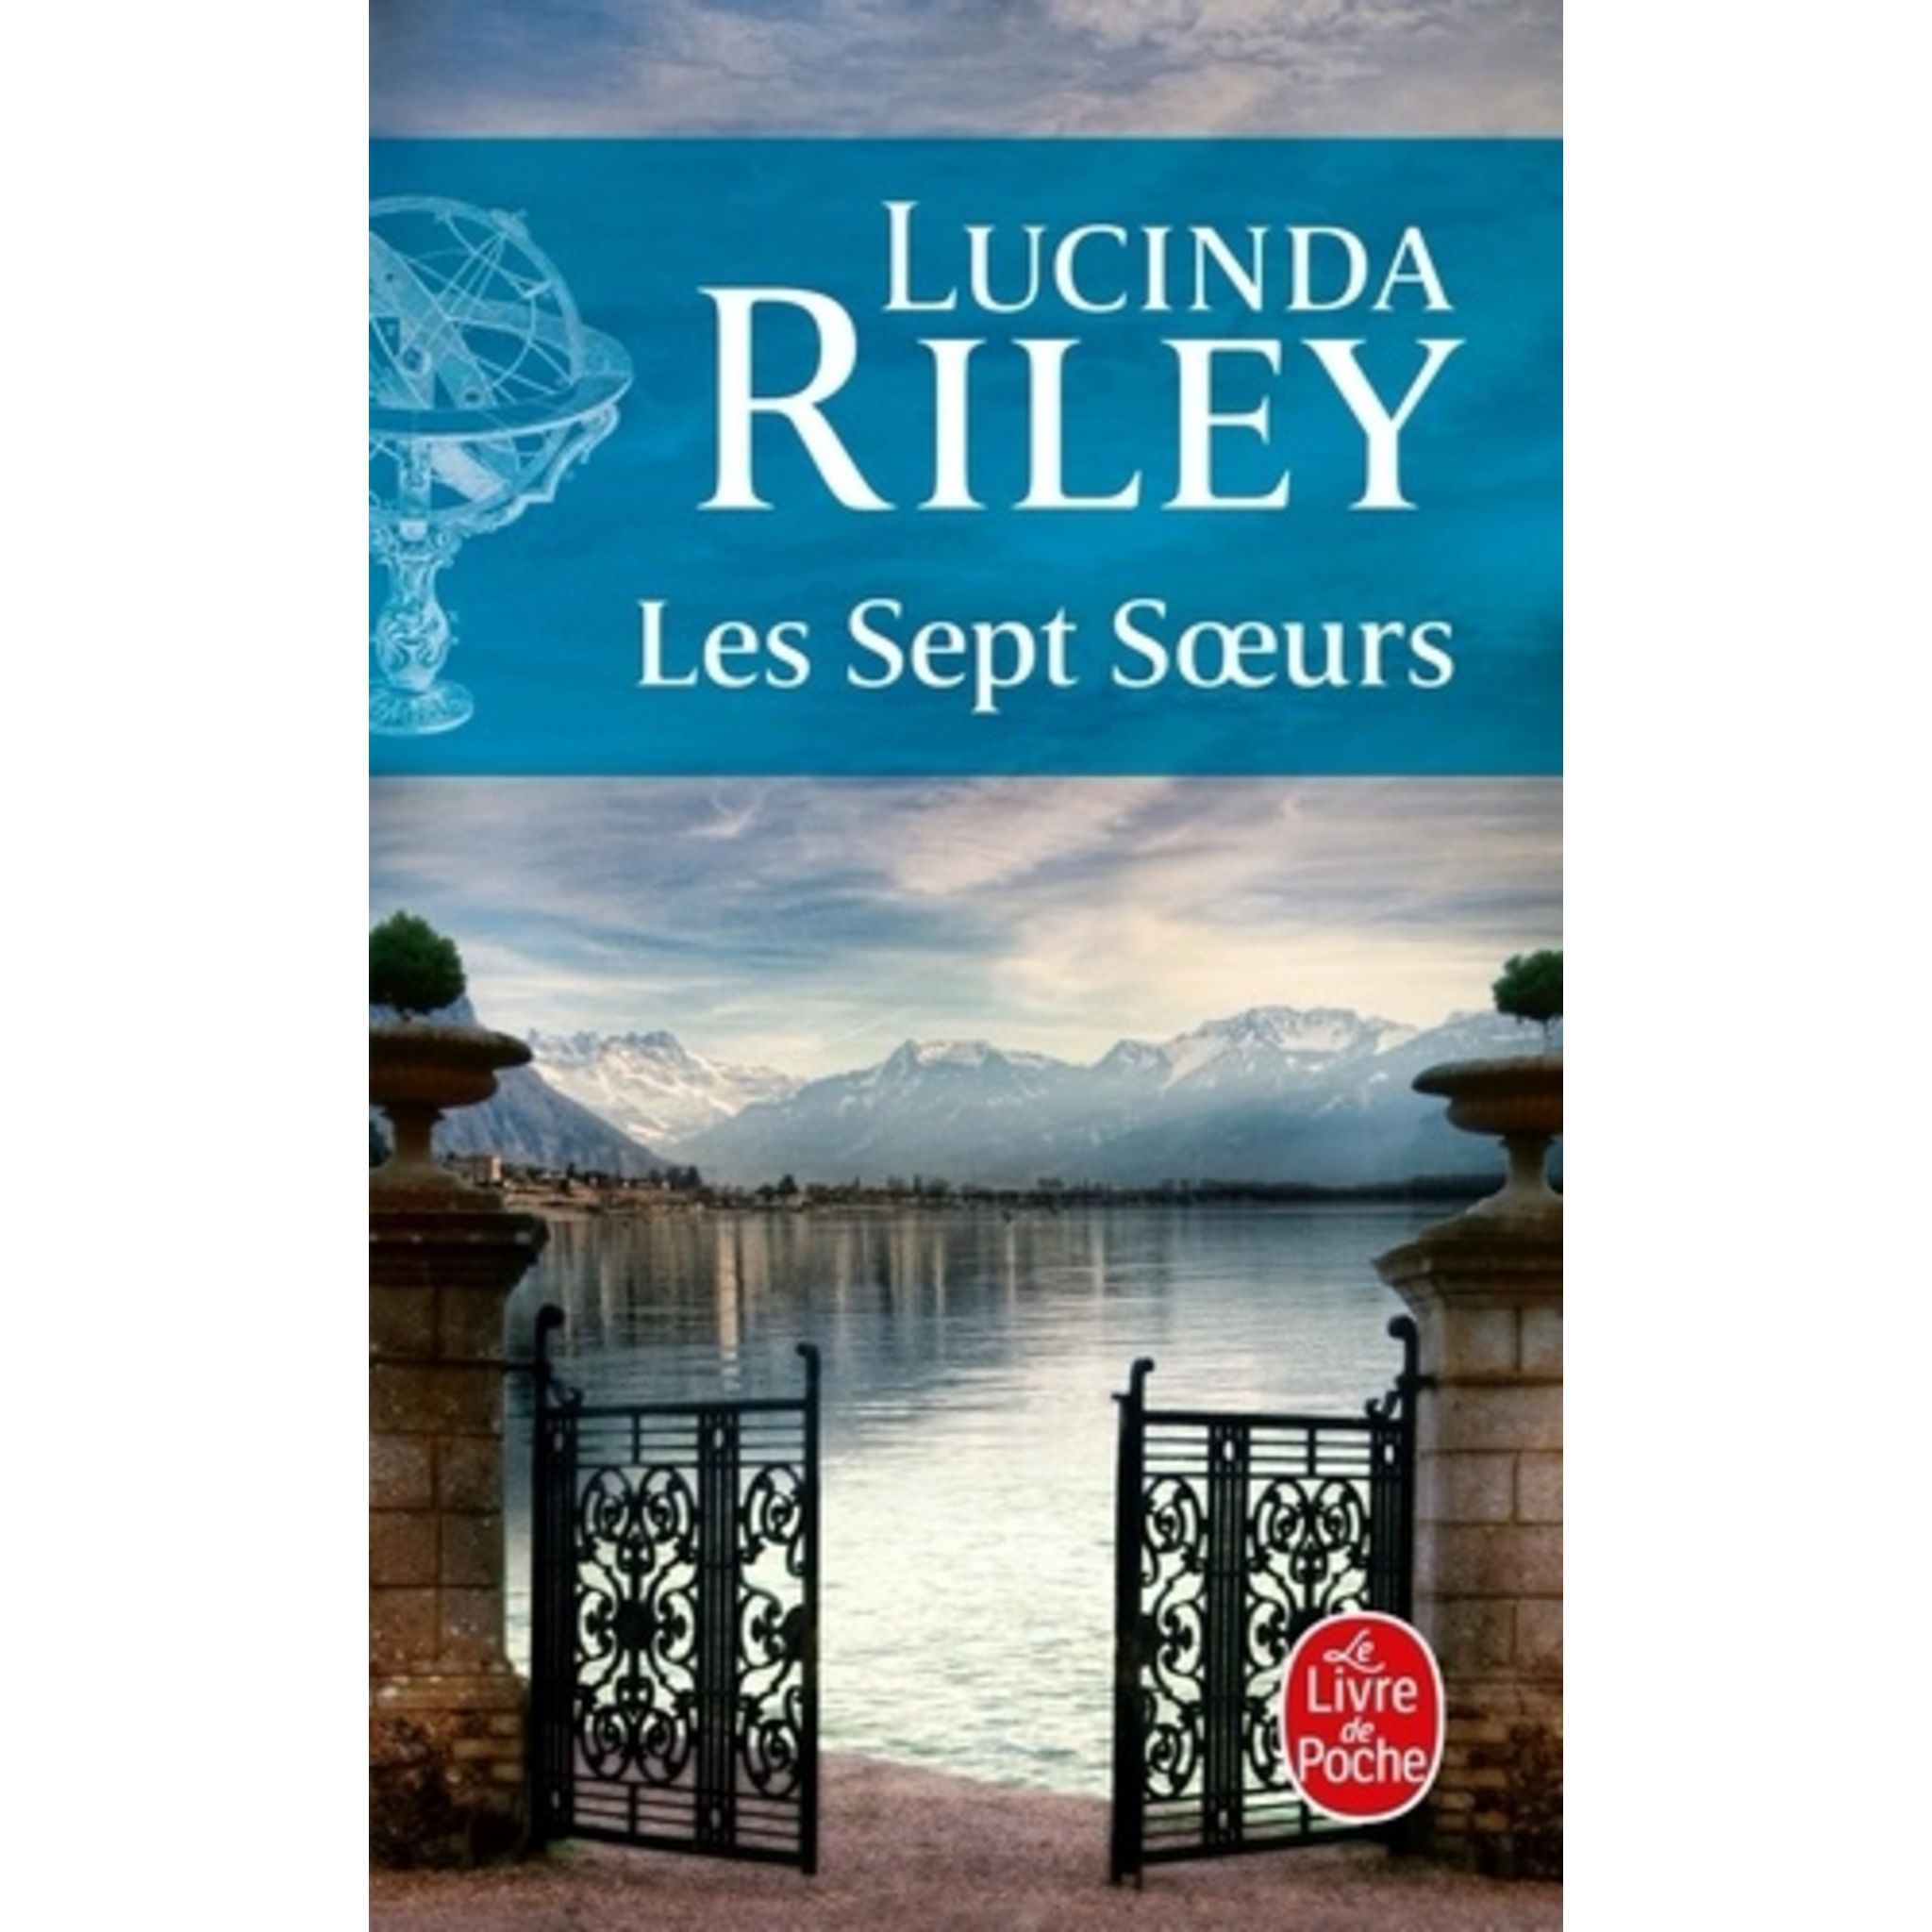 La Soeur disparue, roman de Lucinda Riley – A livre ouvert